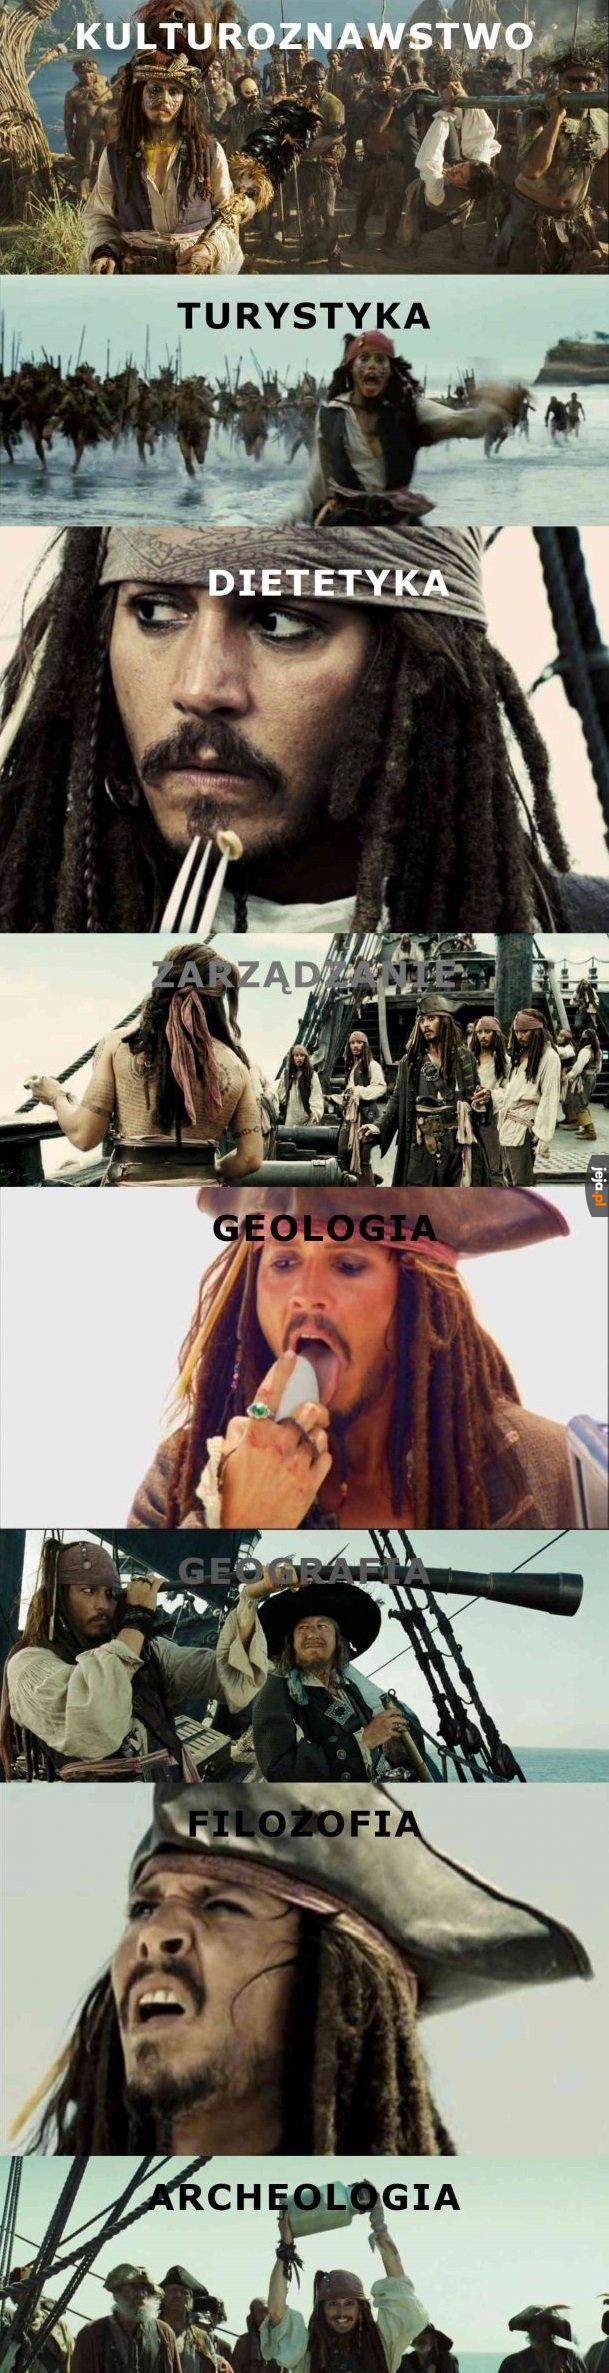 Studia według Kapitana Jacka Sparrowa